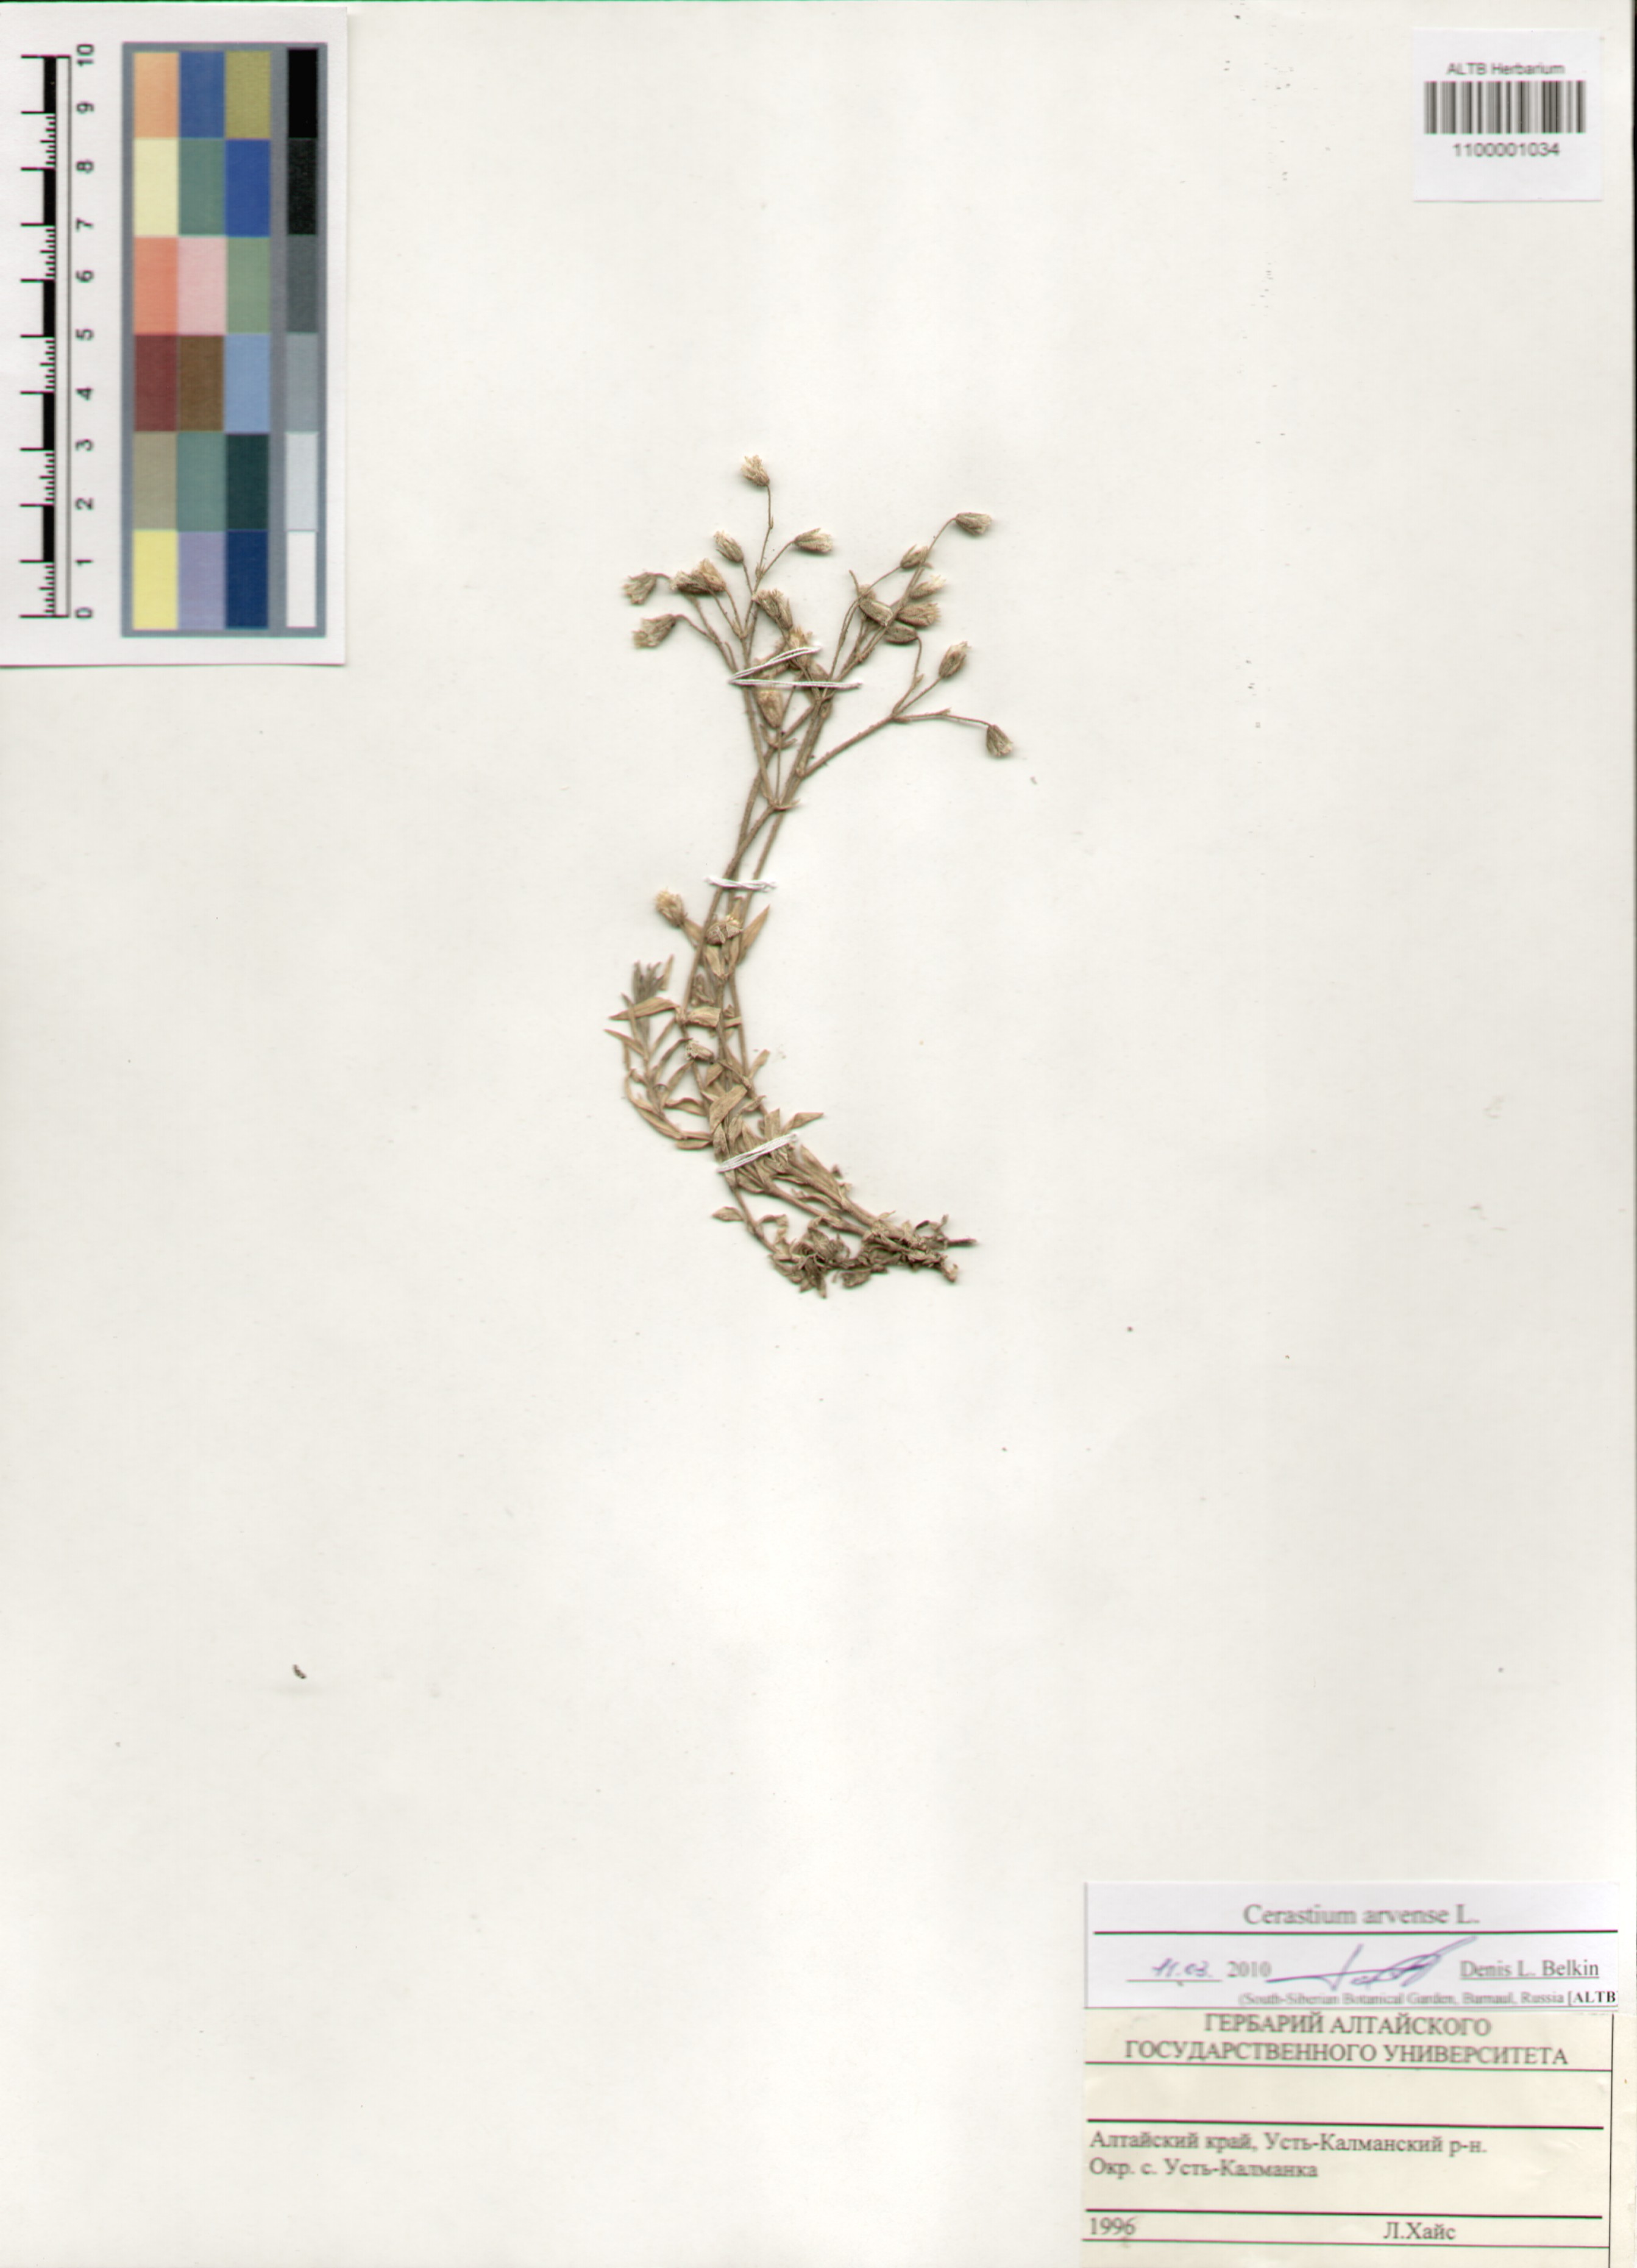 Caryophyllaceae,Cerastium arvense L.